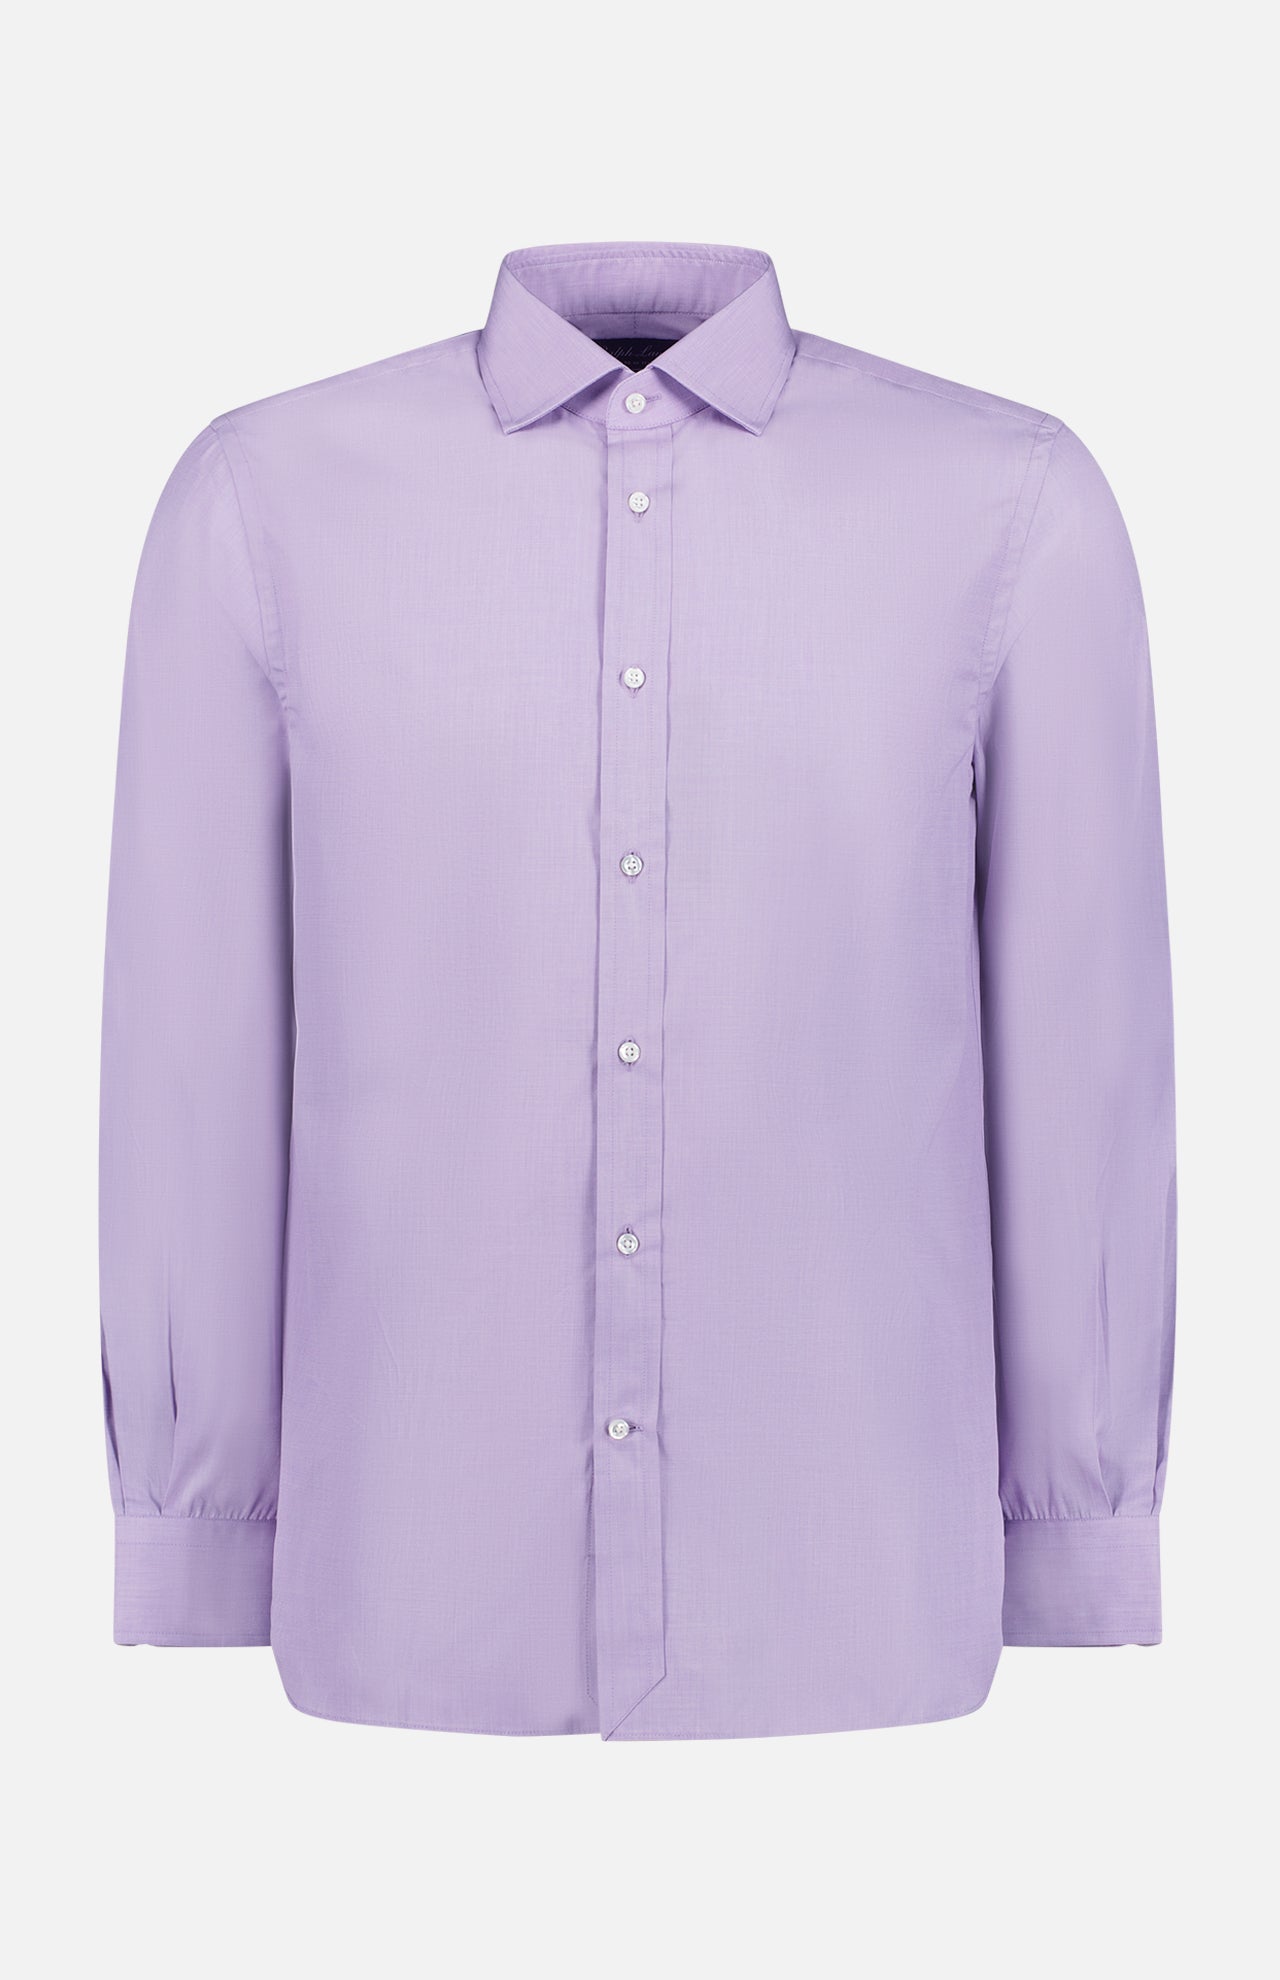 Lauren Ralph Lauren Womens XL Purple Long Sleeves Button Up Linen